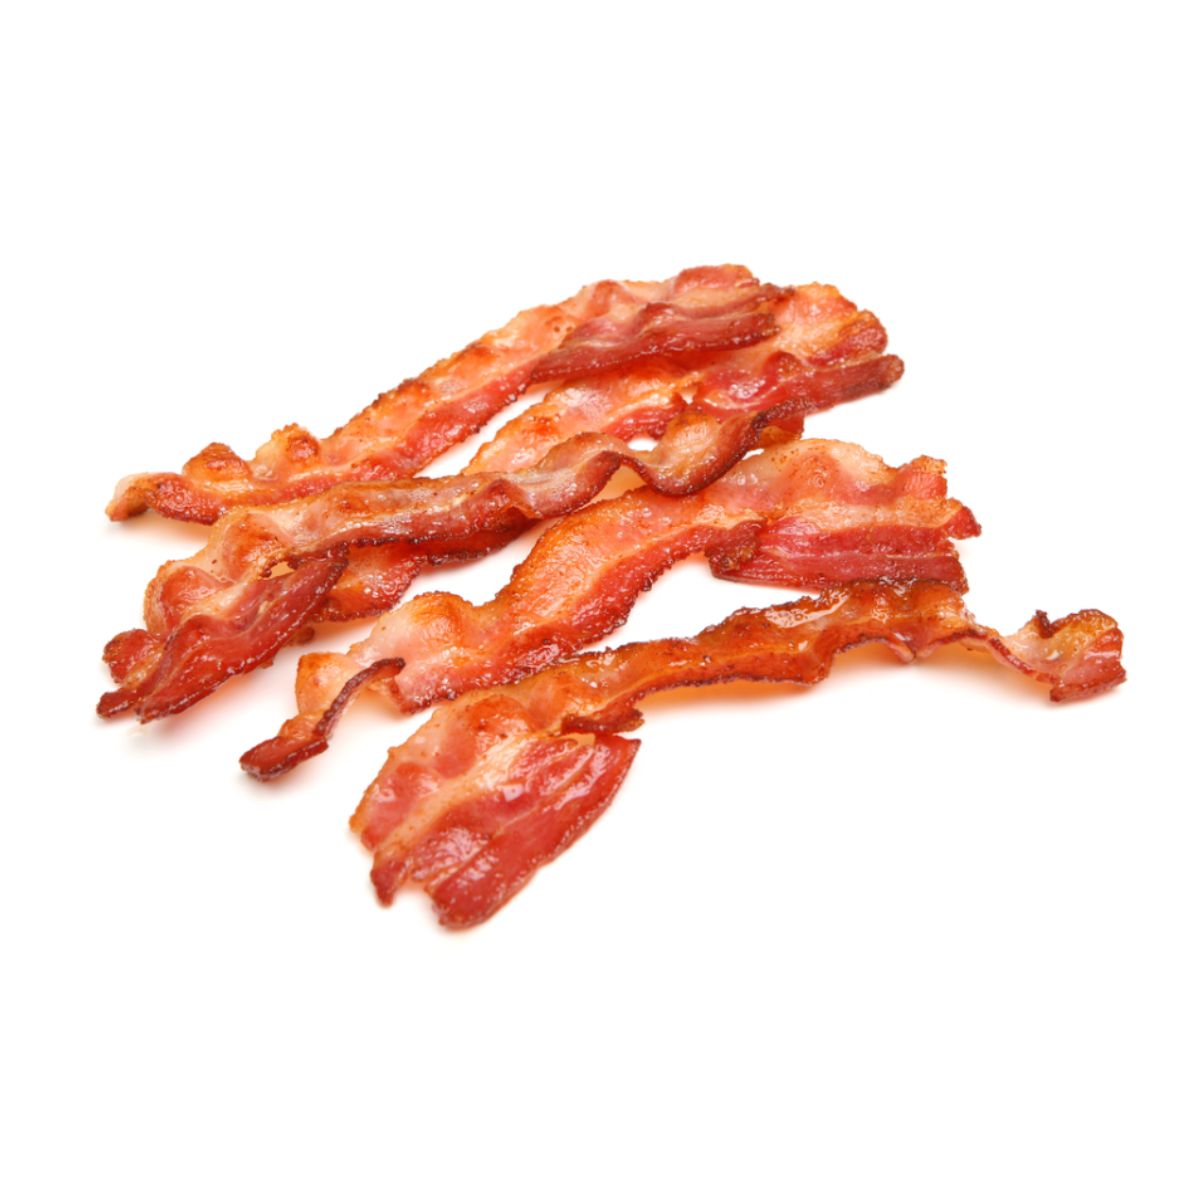 bacon-def-cryovac-bizzin-kg-1.jpg